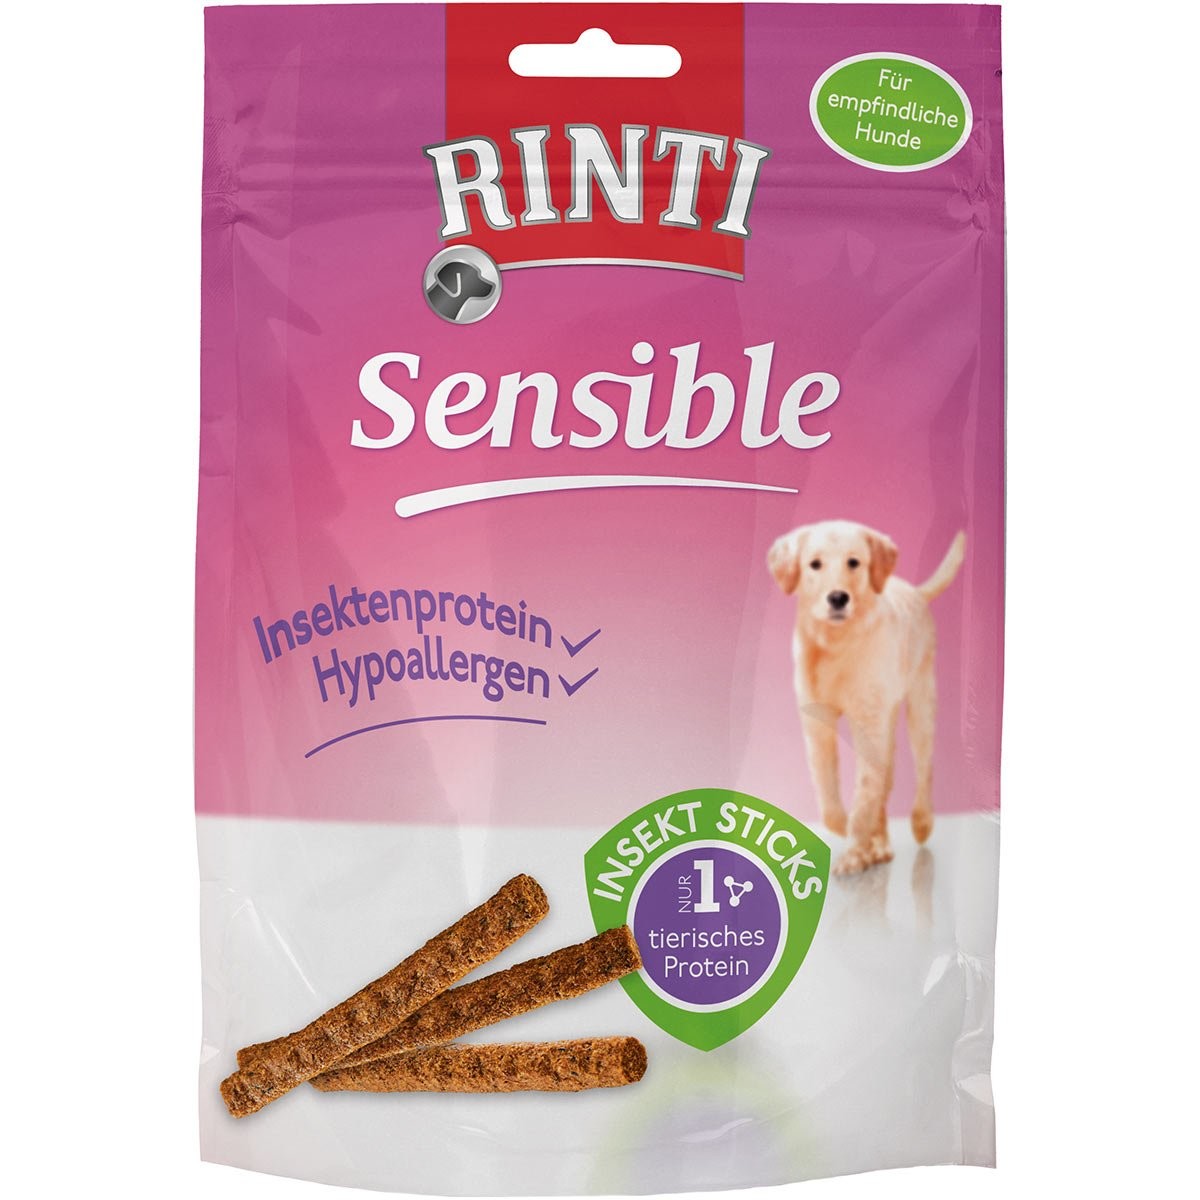 RINTI Sensible Snack Insekt Sticks - výhodné balení: 24 x 50 g